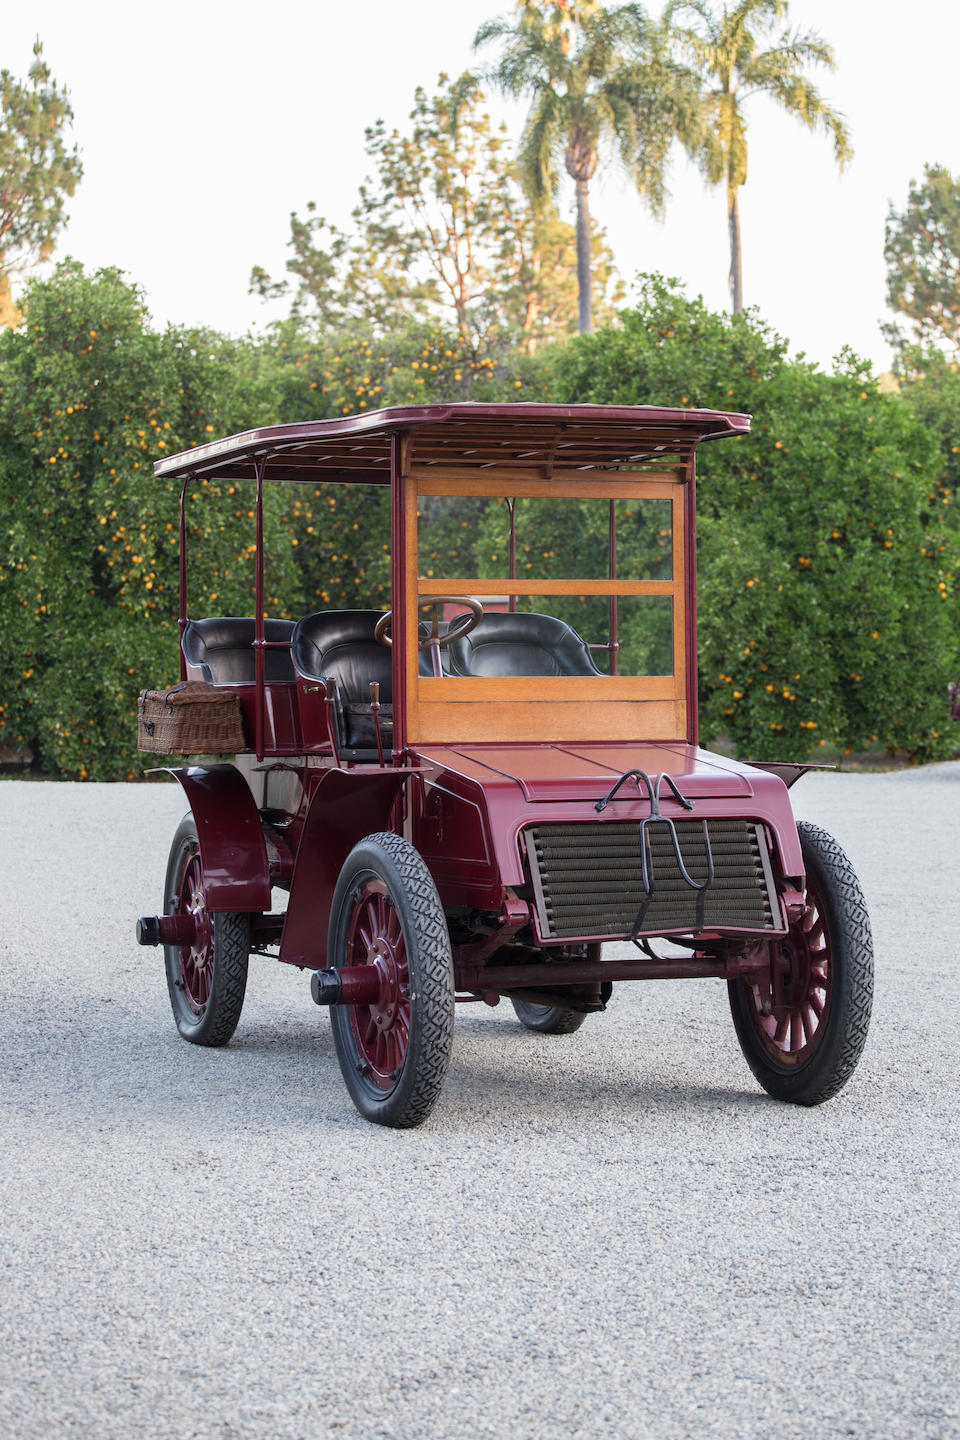 <b>1902 Packard Model G Four-Passenger Surrey</b>